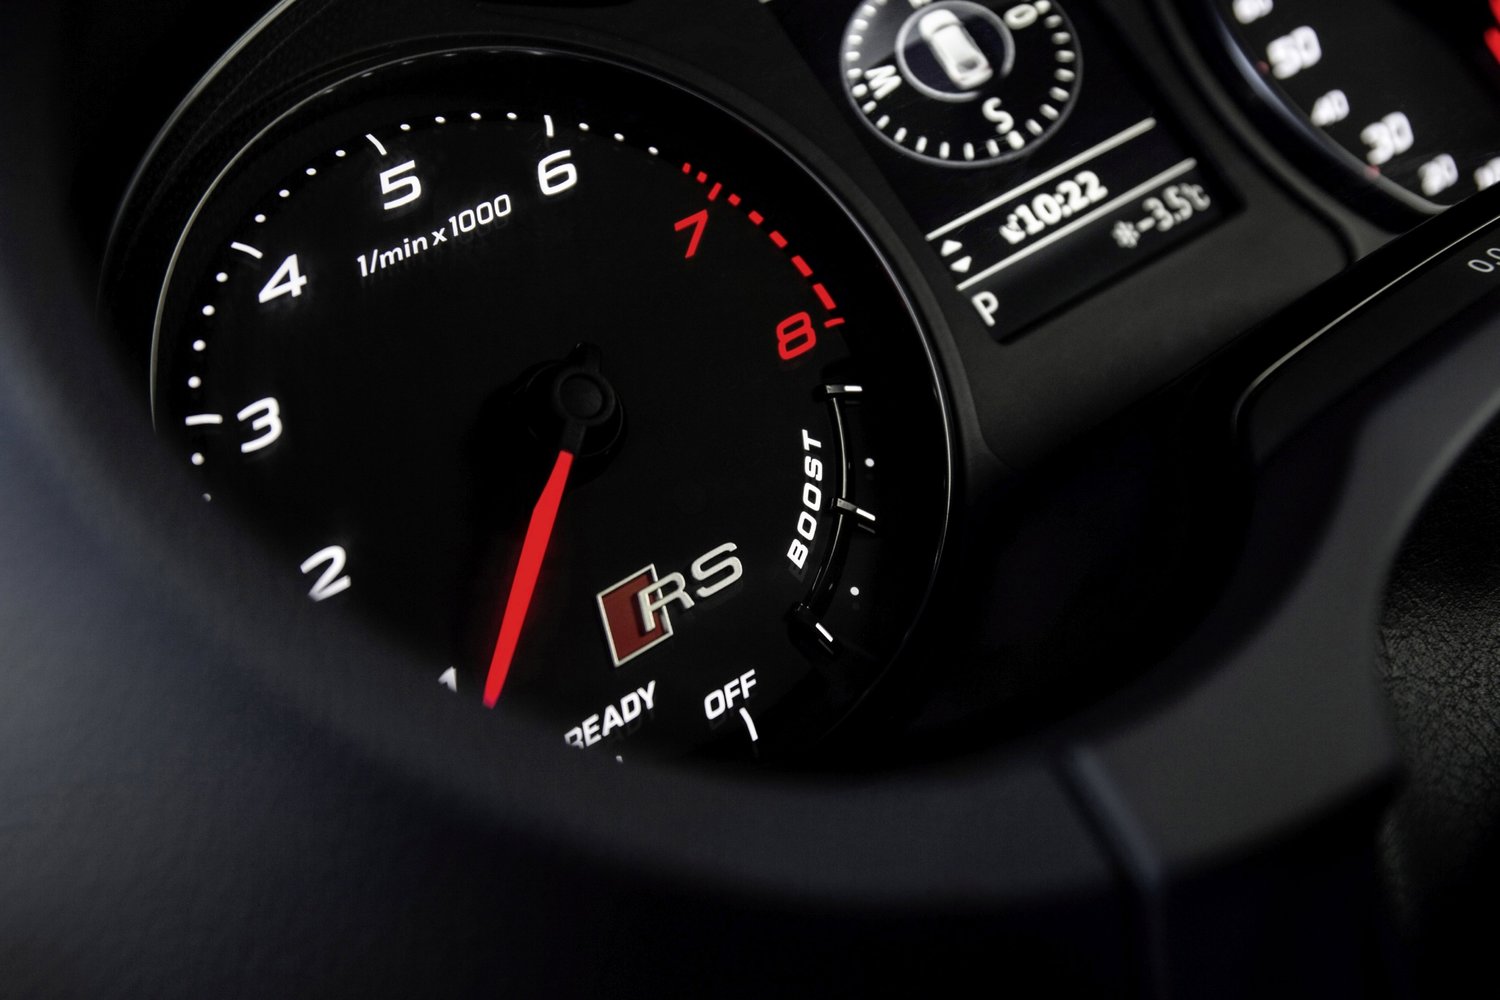 хэтчбек 5 дв. Audi RS3 2015 - 2016г выпуска модификация Базовая 2.5 AMT (367 л.с.) 4×4